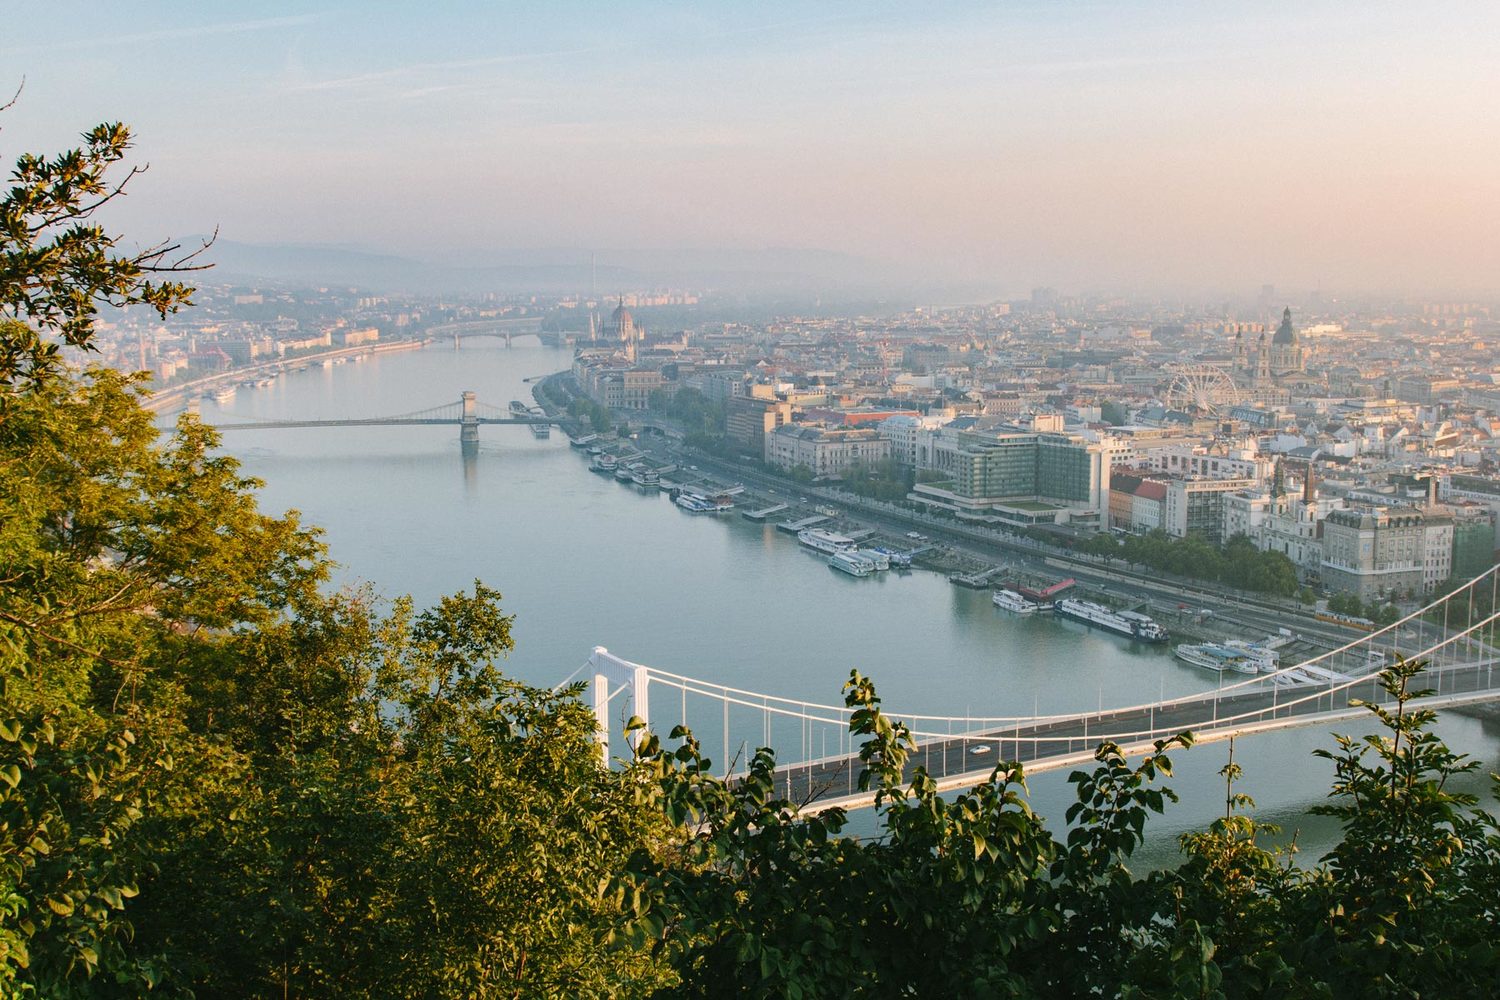   Flytographer:   Dana in   Budapest  